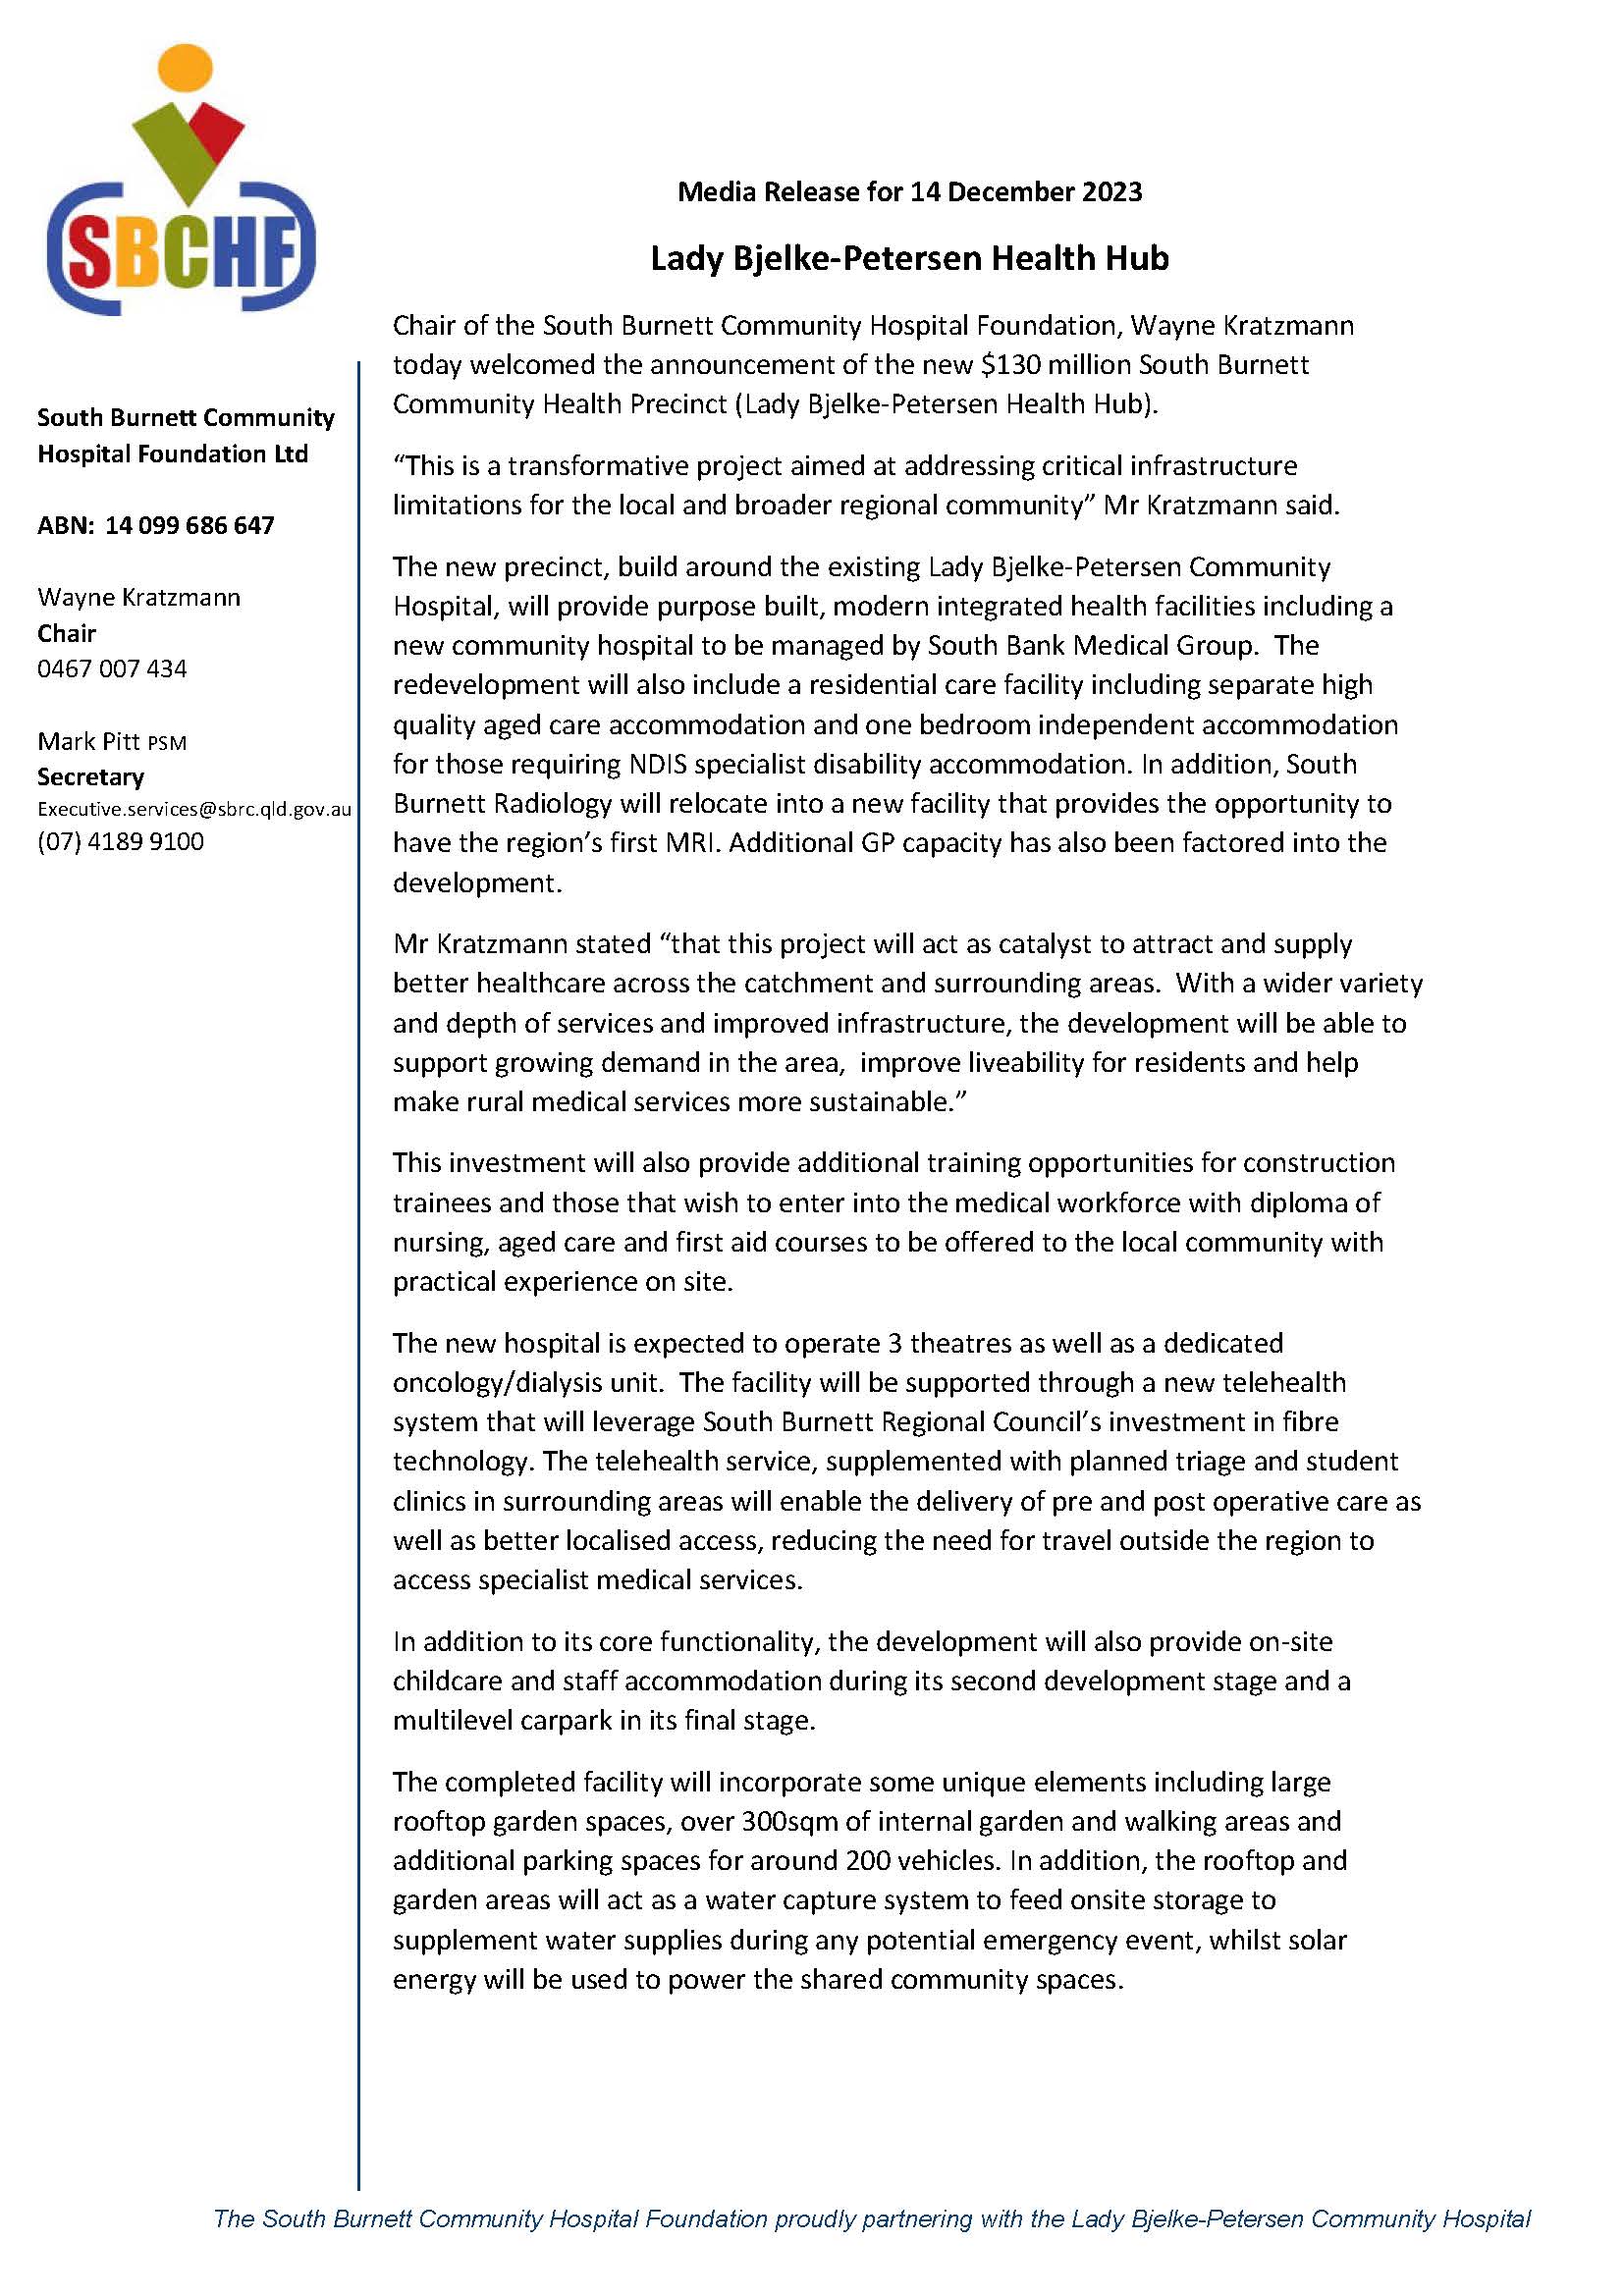 South Burnett Community Hospital Foundation Ltd - Media Release for 14 December 2023 